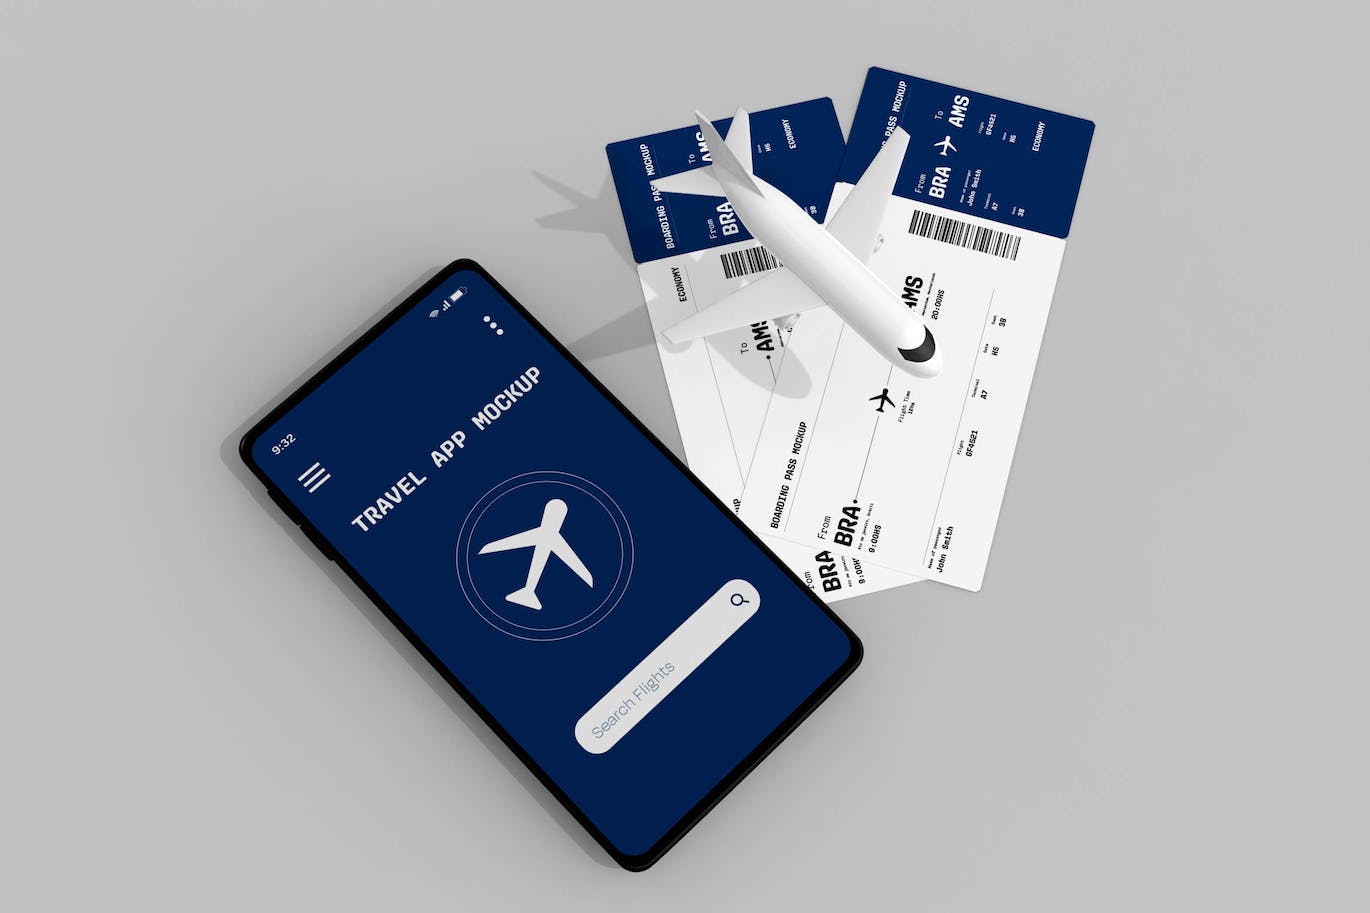 手机屏幕&登机牌设计展示样机 Travel App & Boarding Pass Mockup 样机素材 第1张